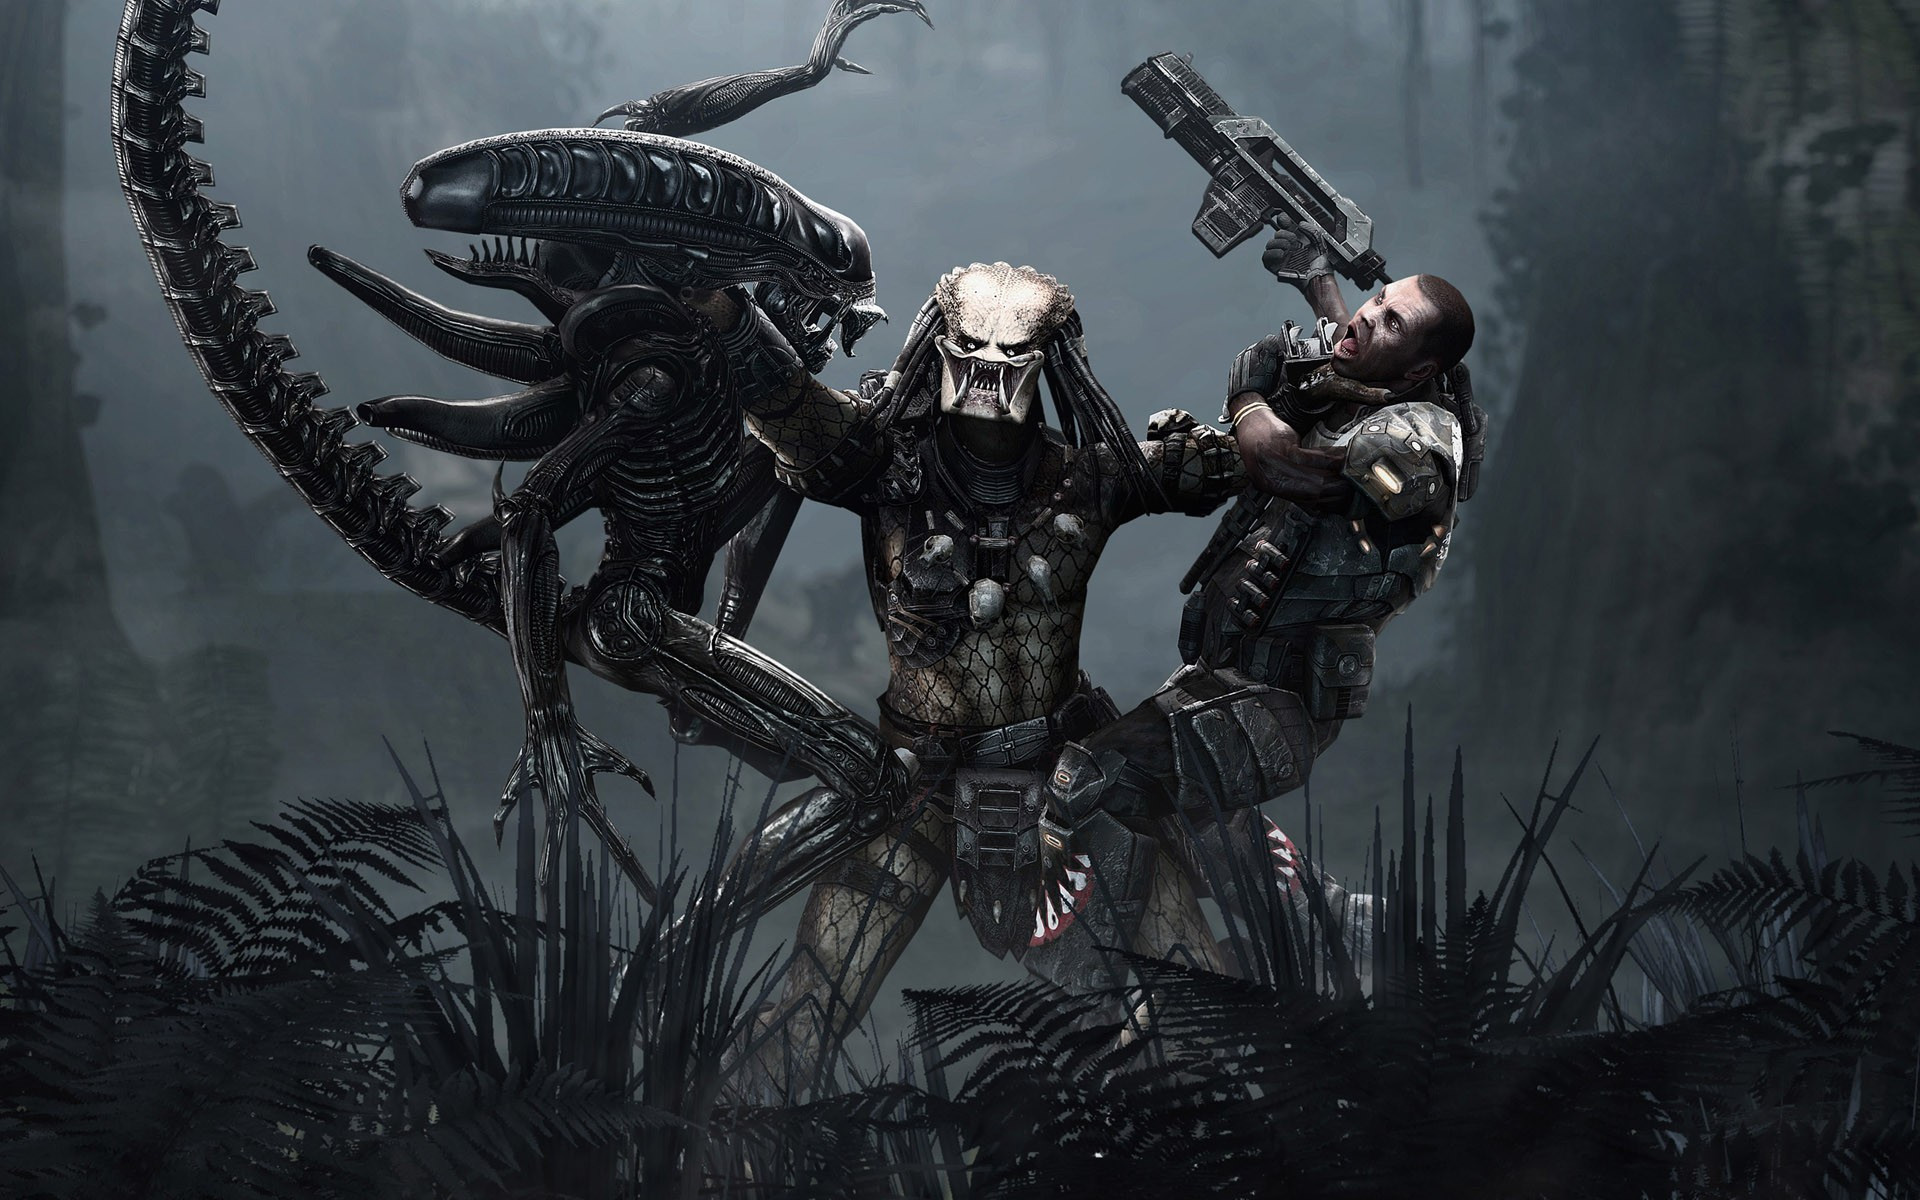 download alien vs predator 2022